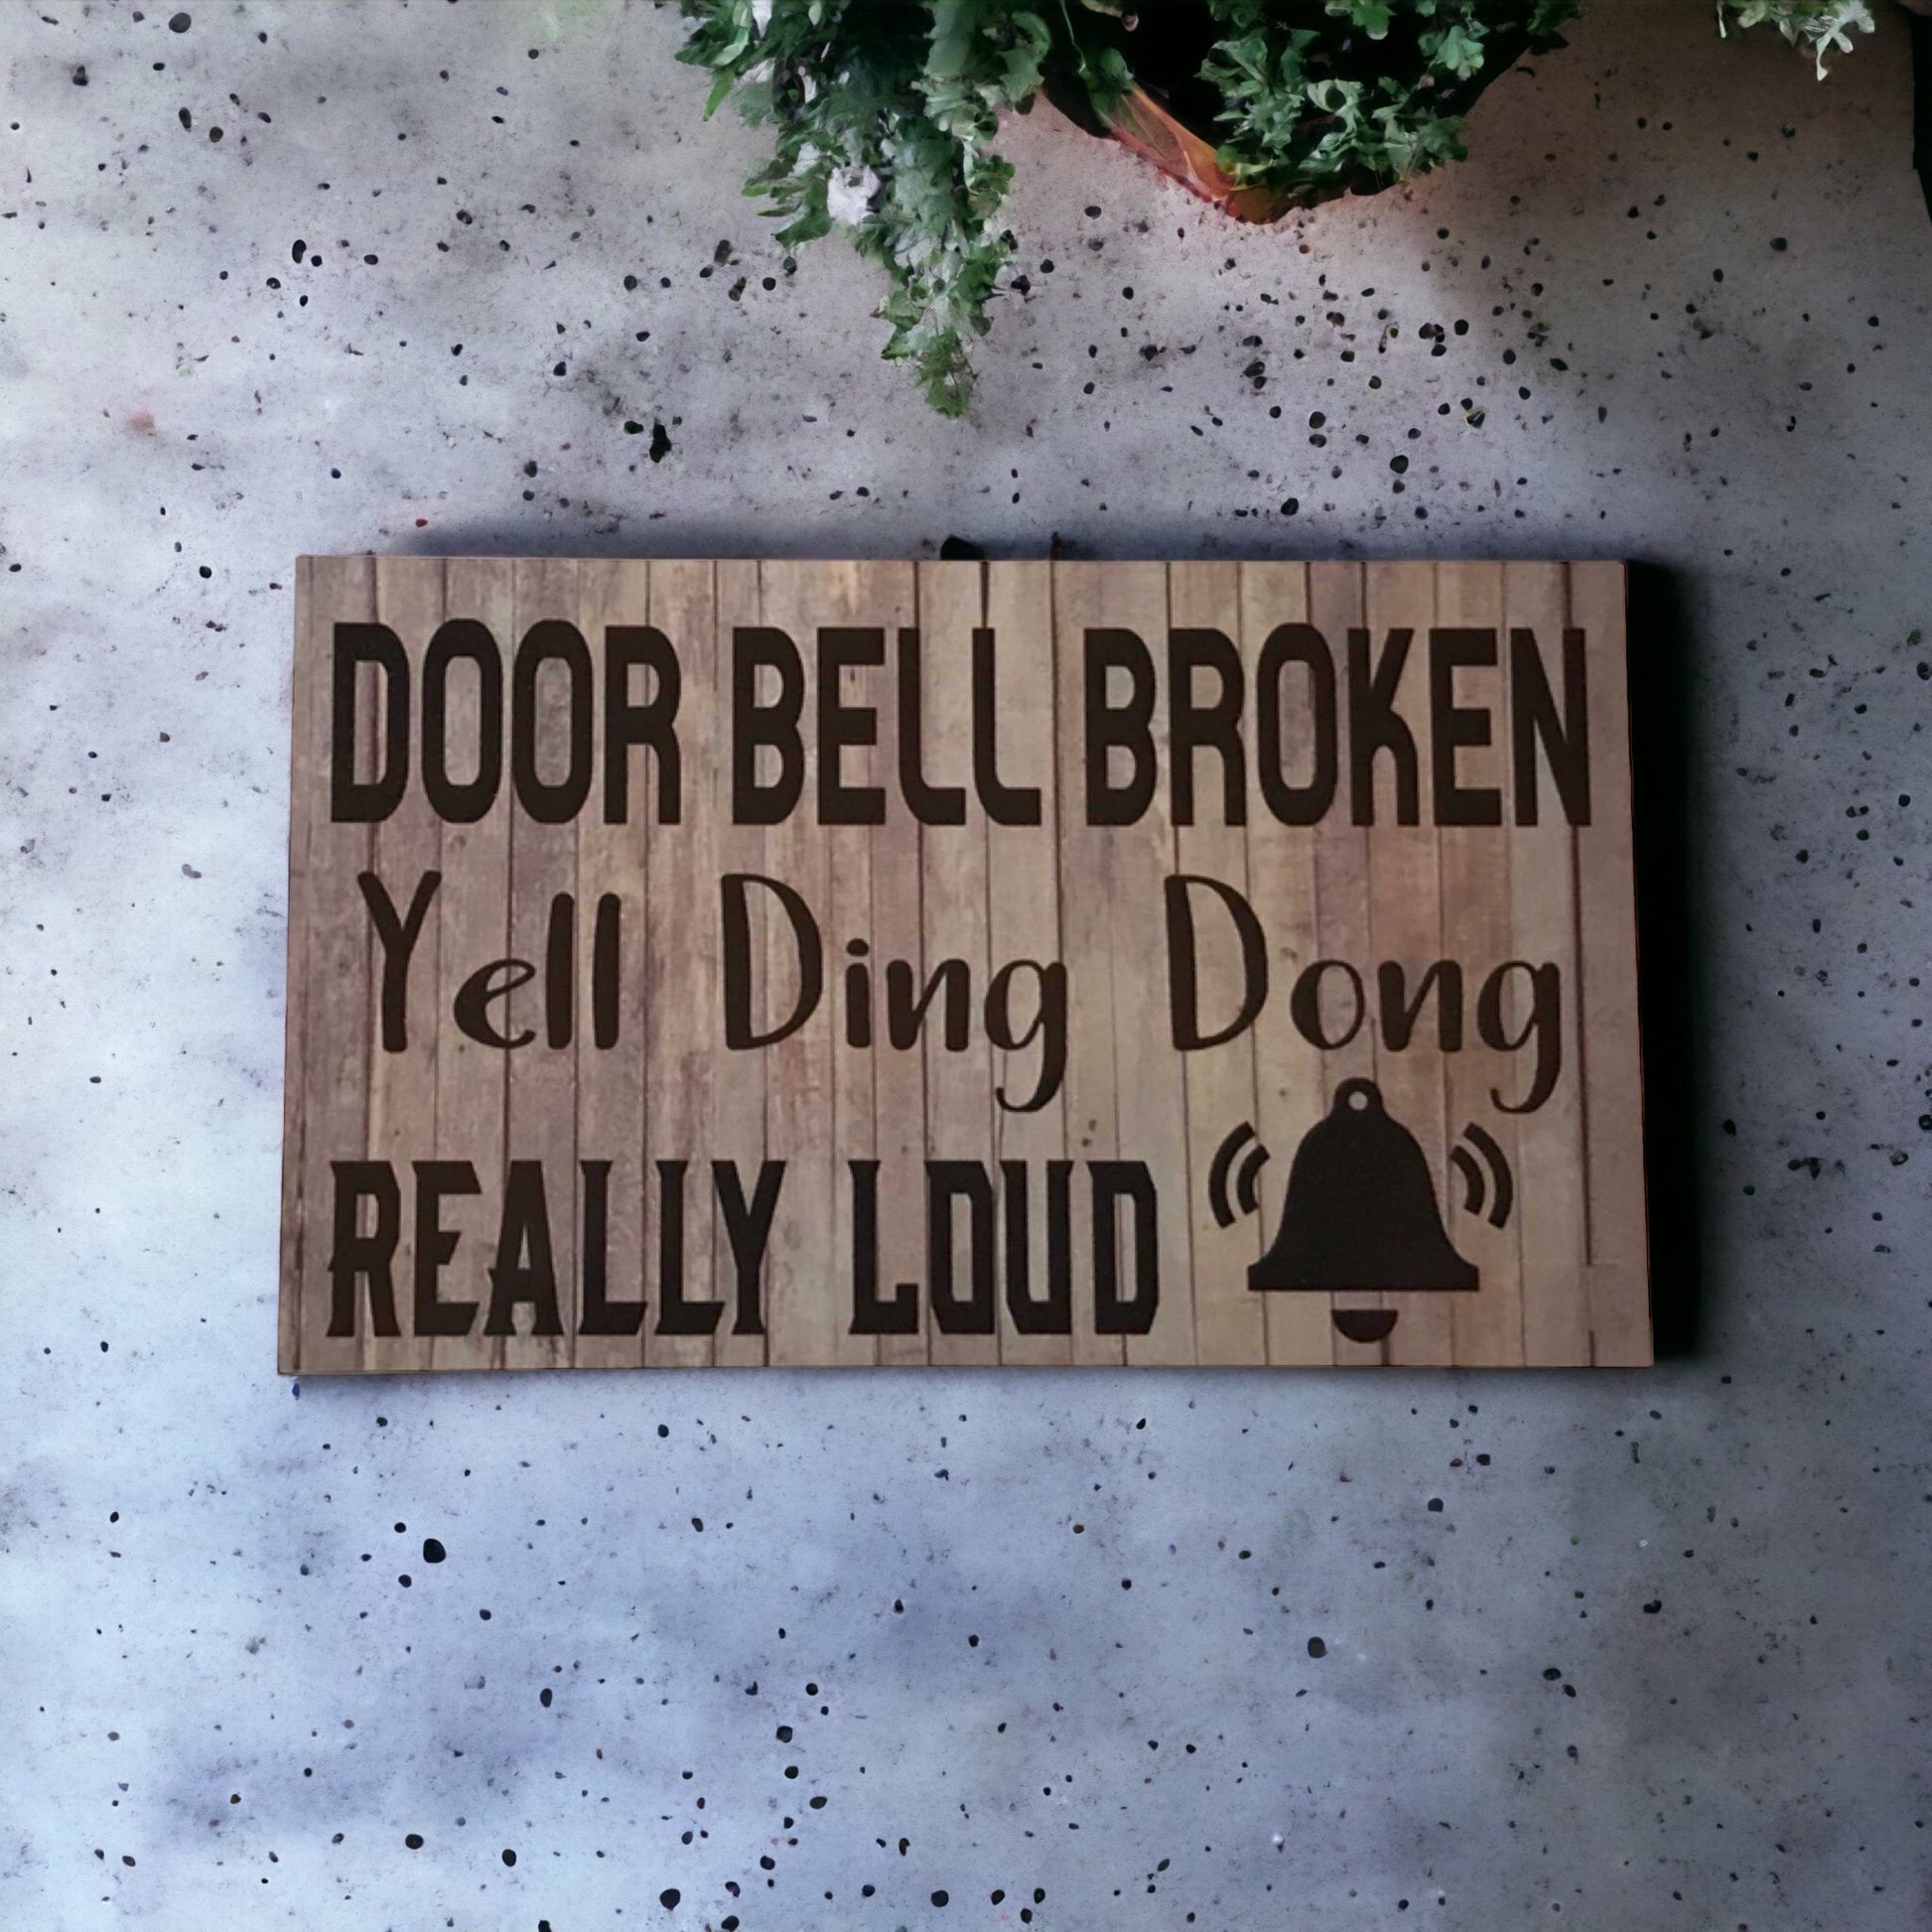 Door Bell Broken Ding Dong Bell Sign - The Renmy Store Homewares & Gifts 